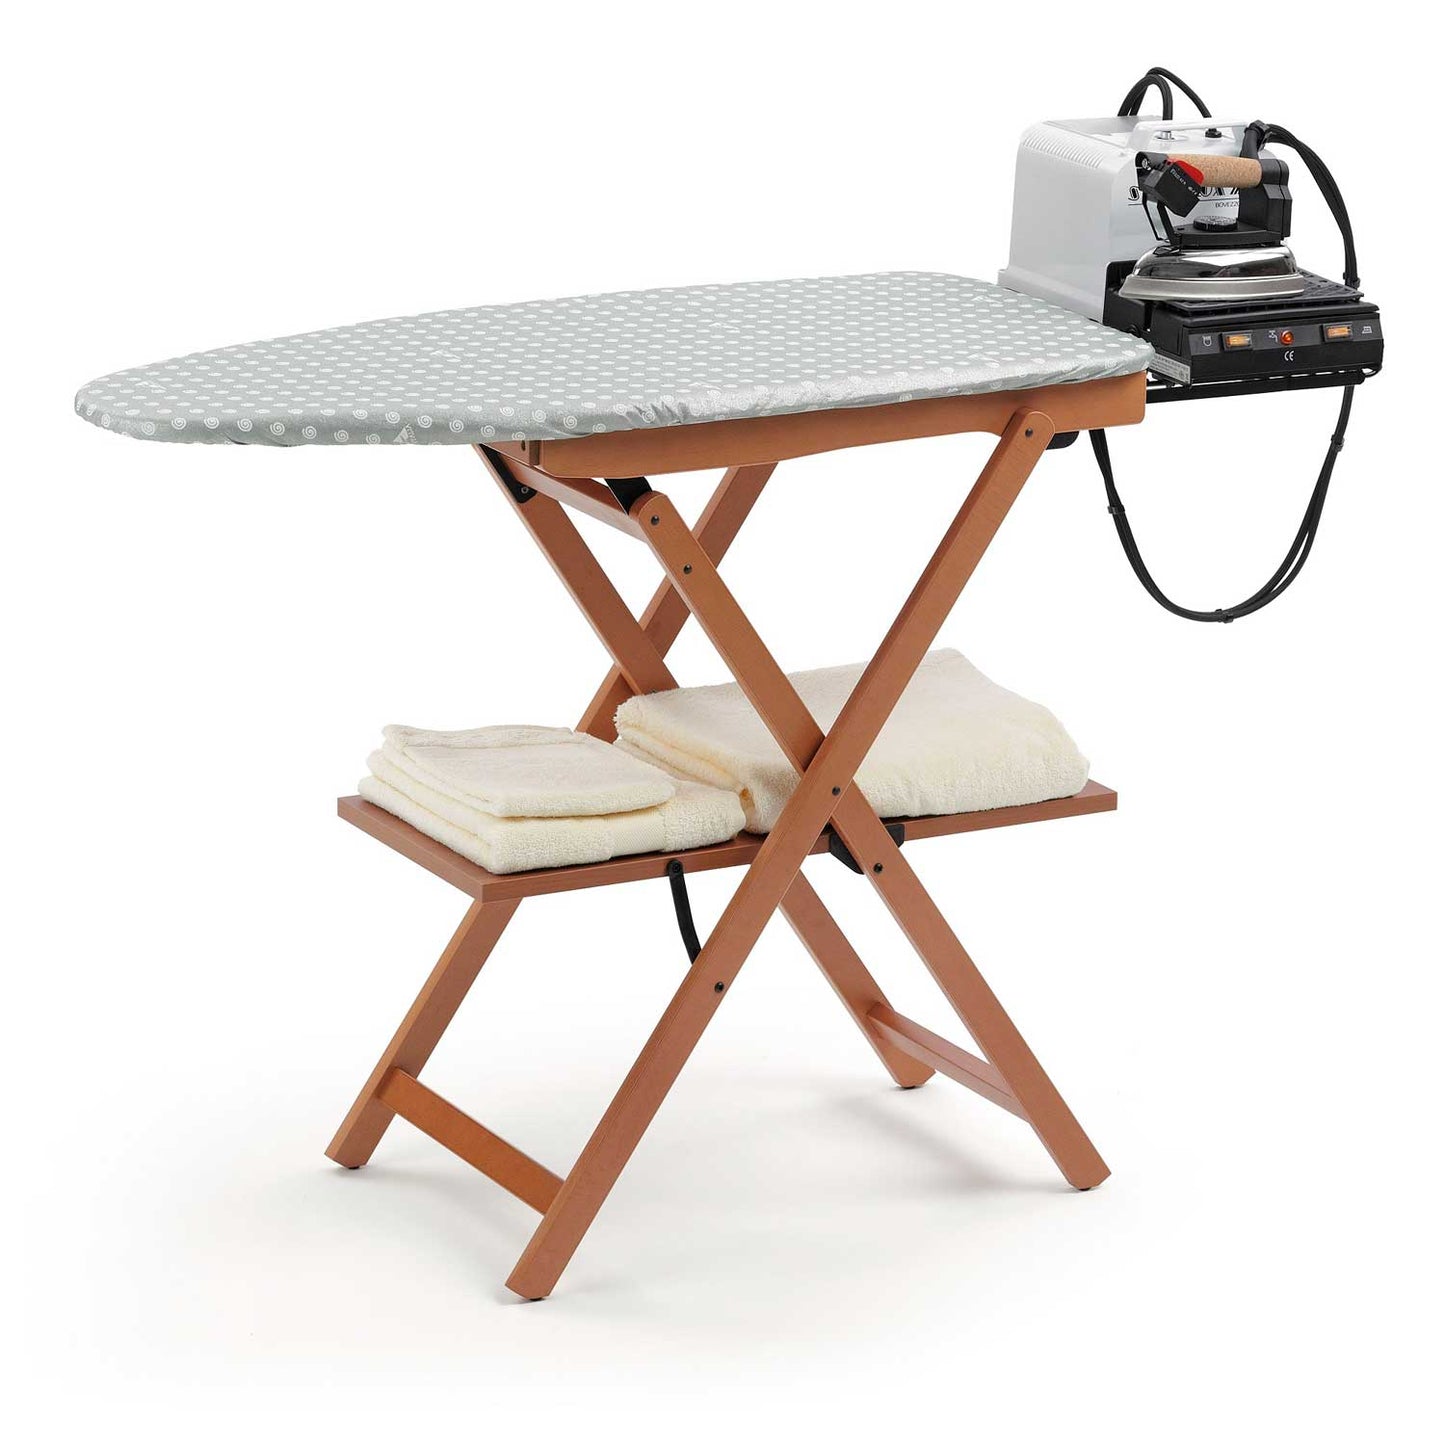 Table à repasser ASTIR, hauteur du plan de travail 87 cm, pieds à la base, repose-fer coulissant - couleur cerise